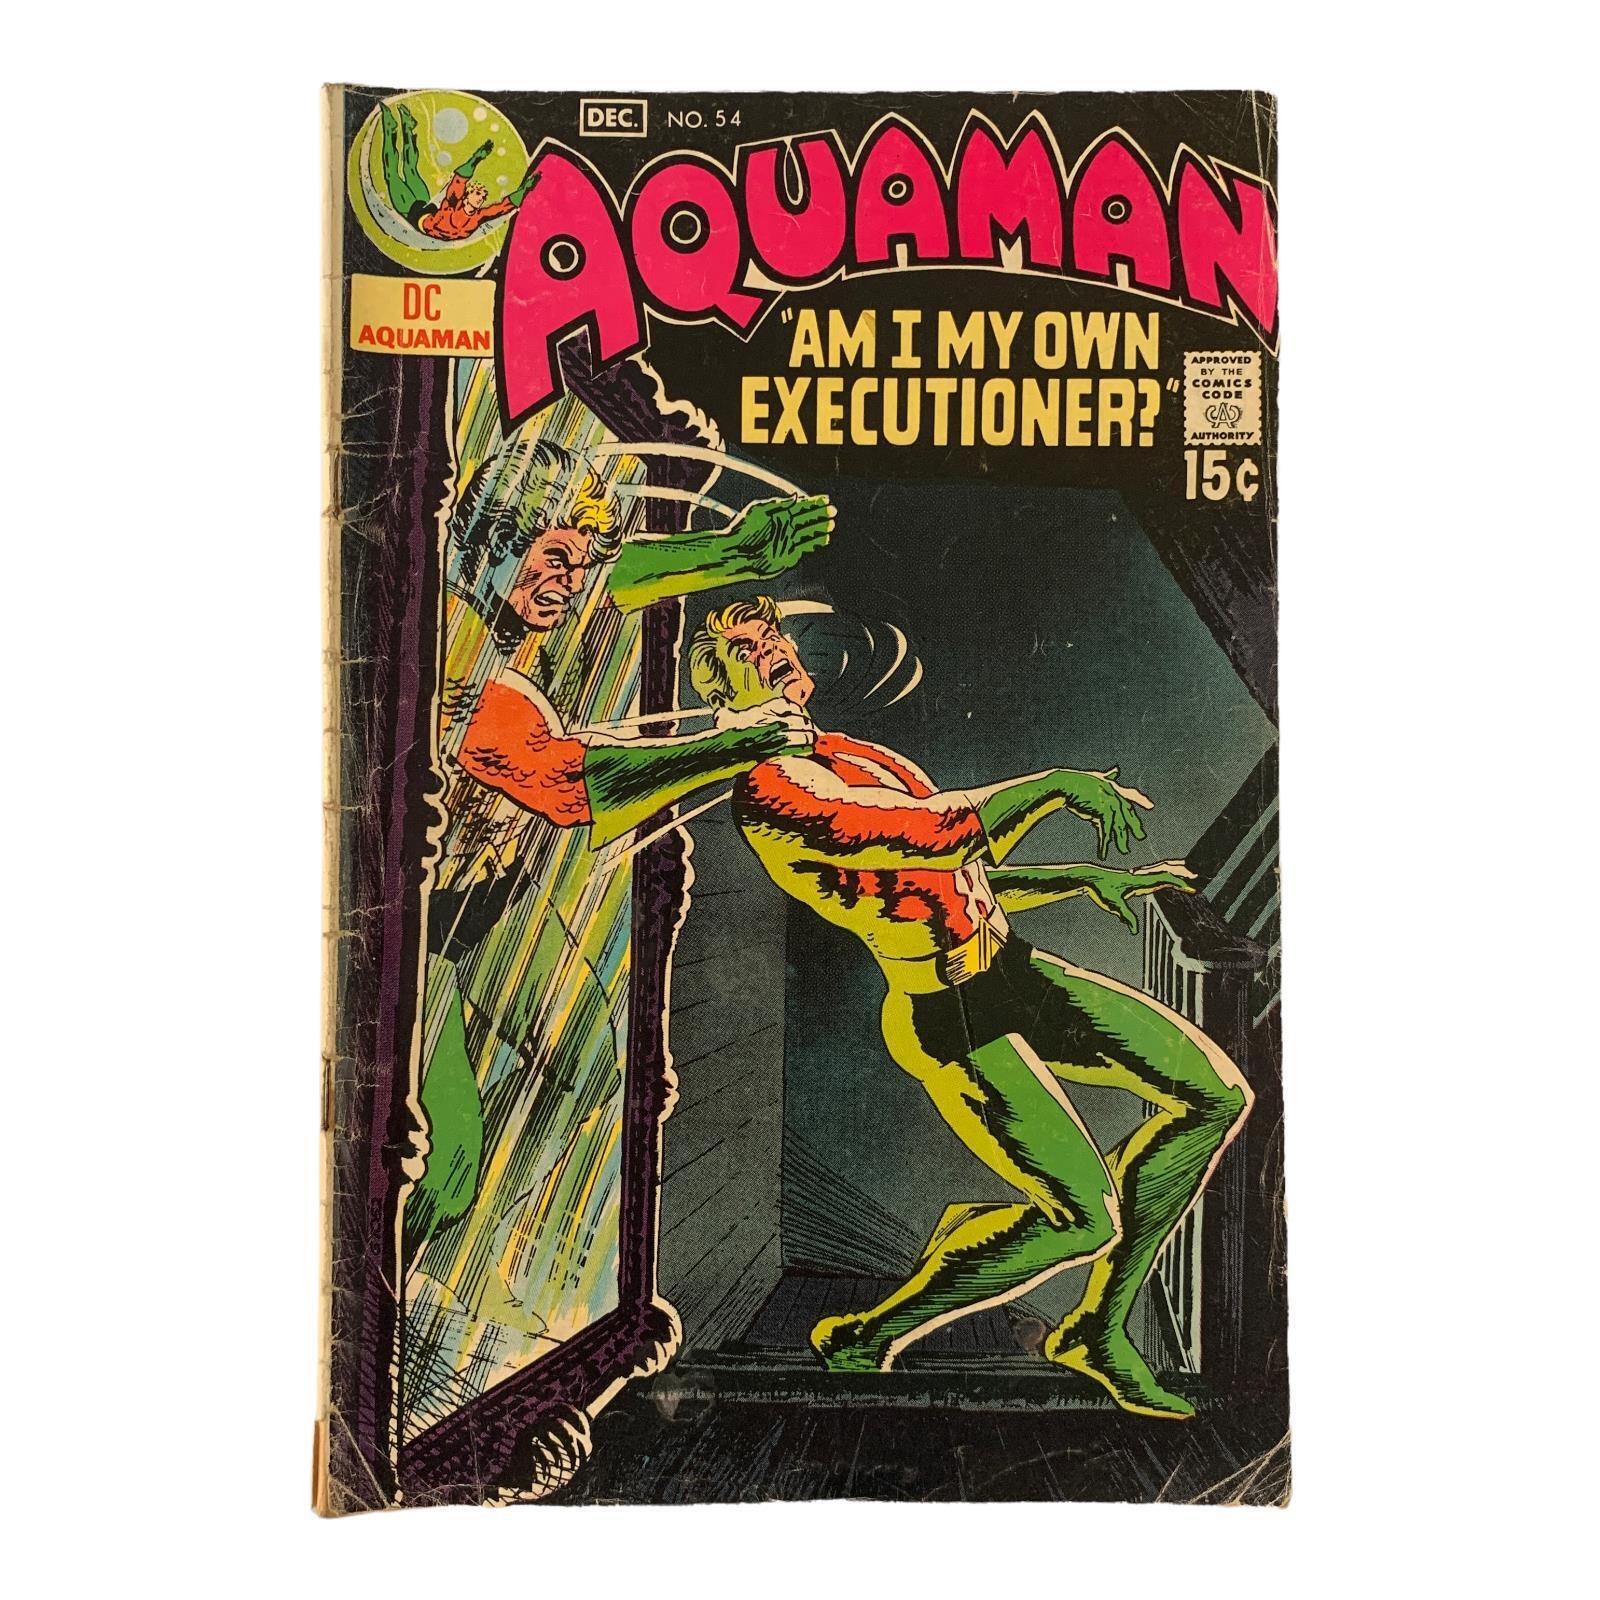 Aquaman #54 (1970) Comic Book DC Comics